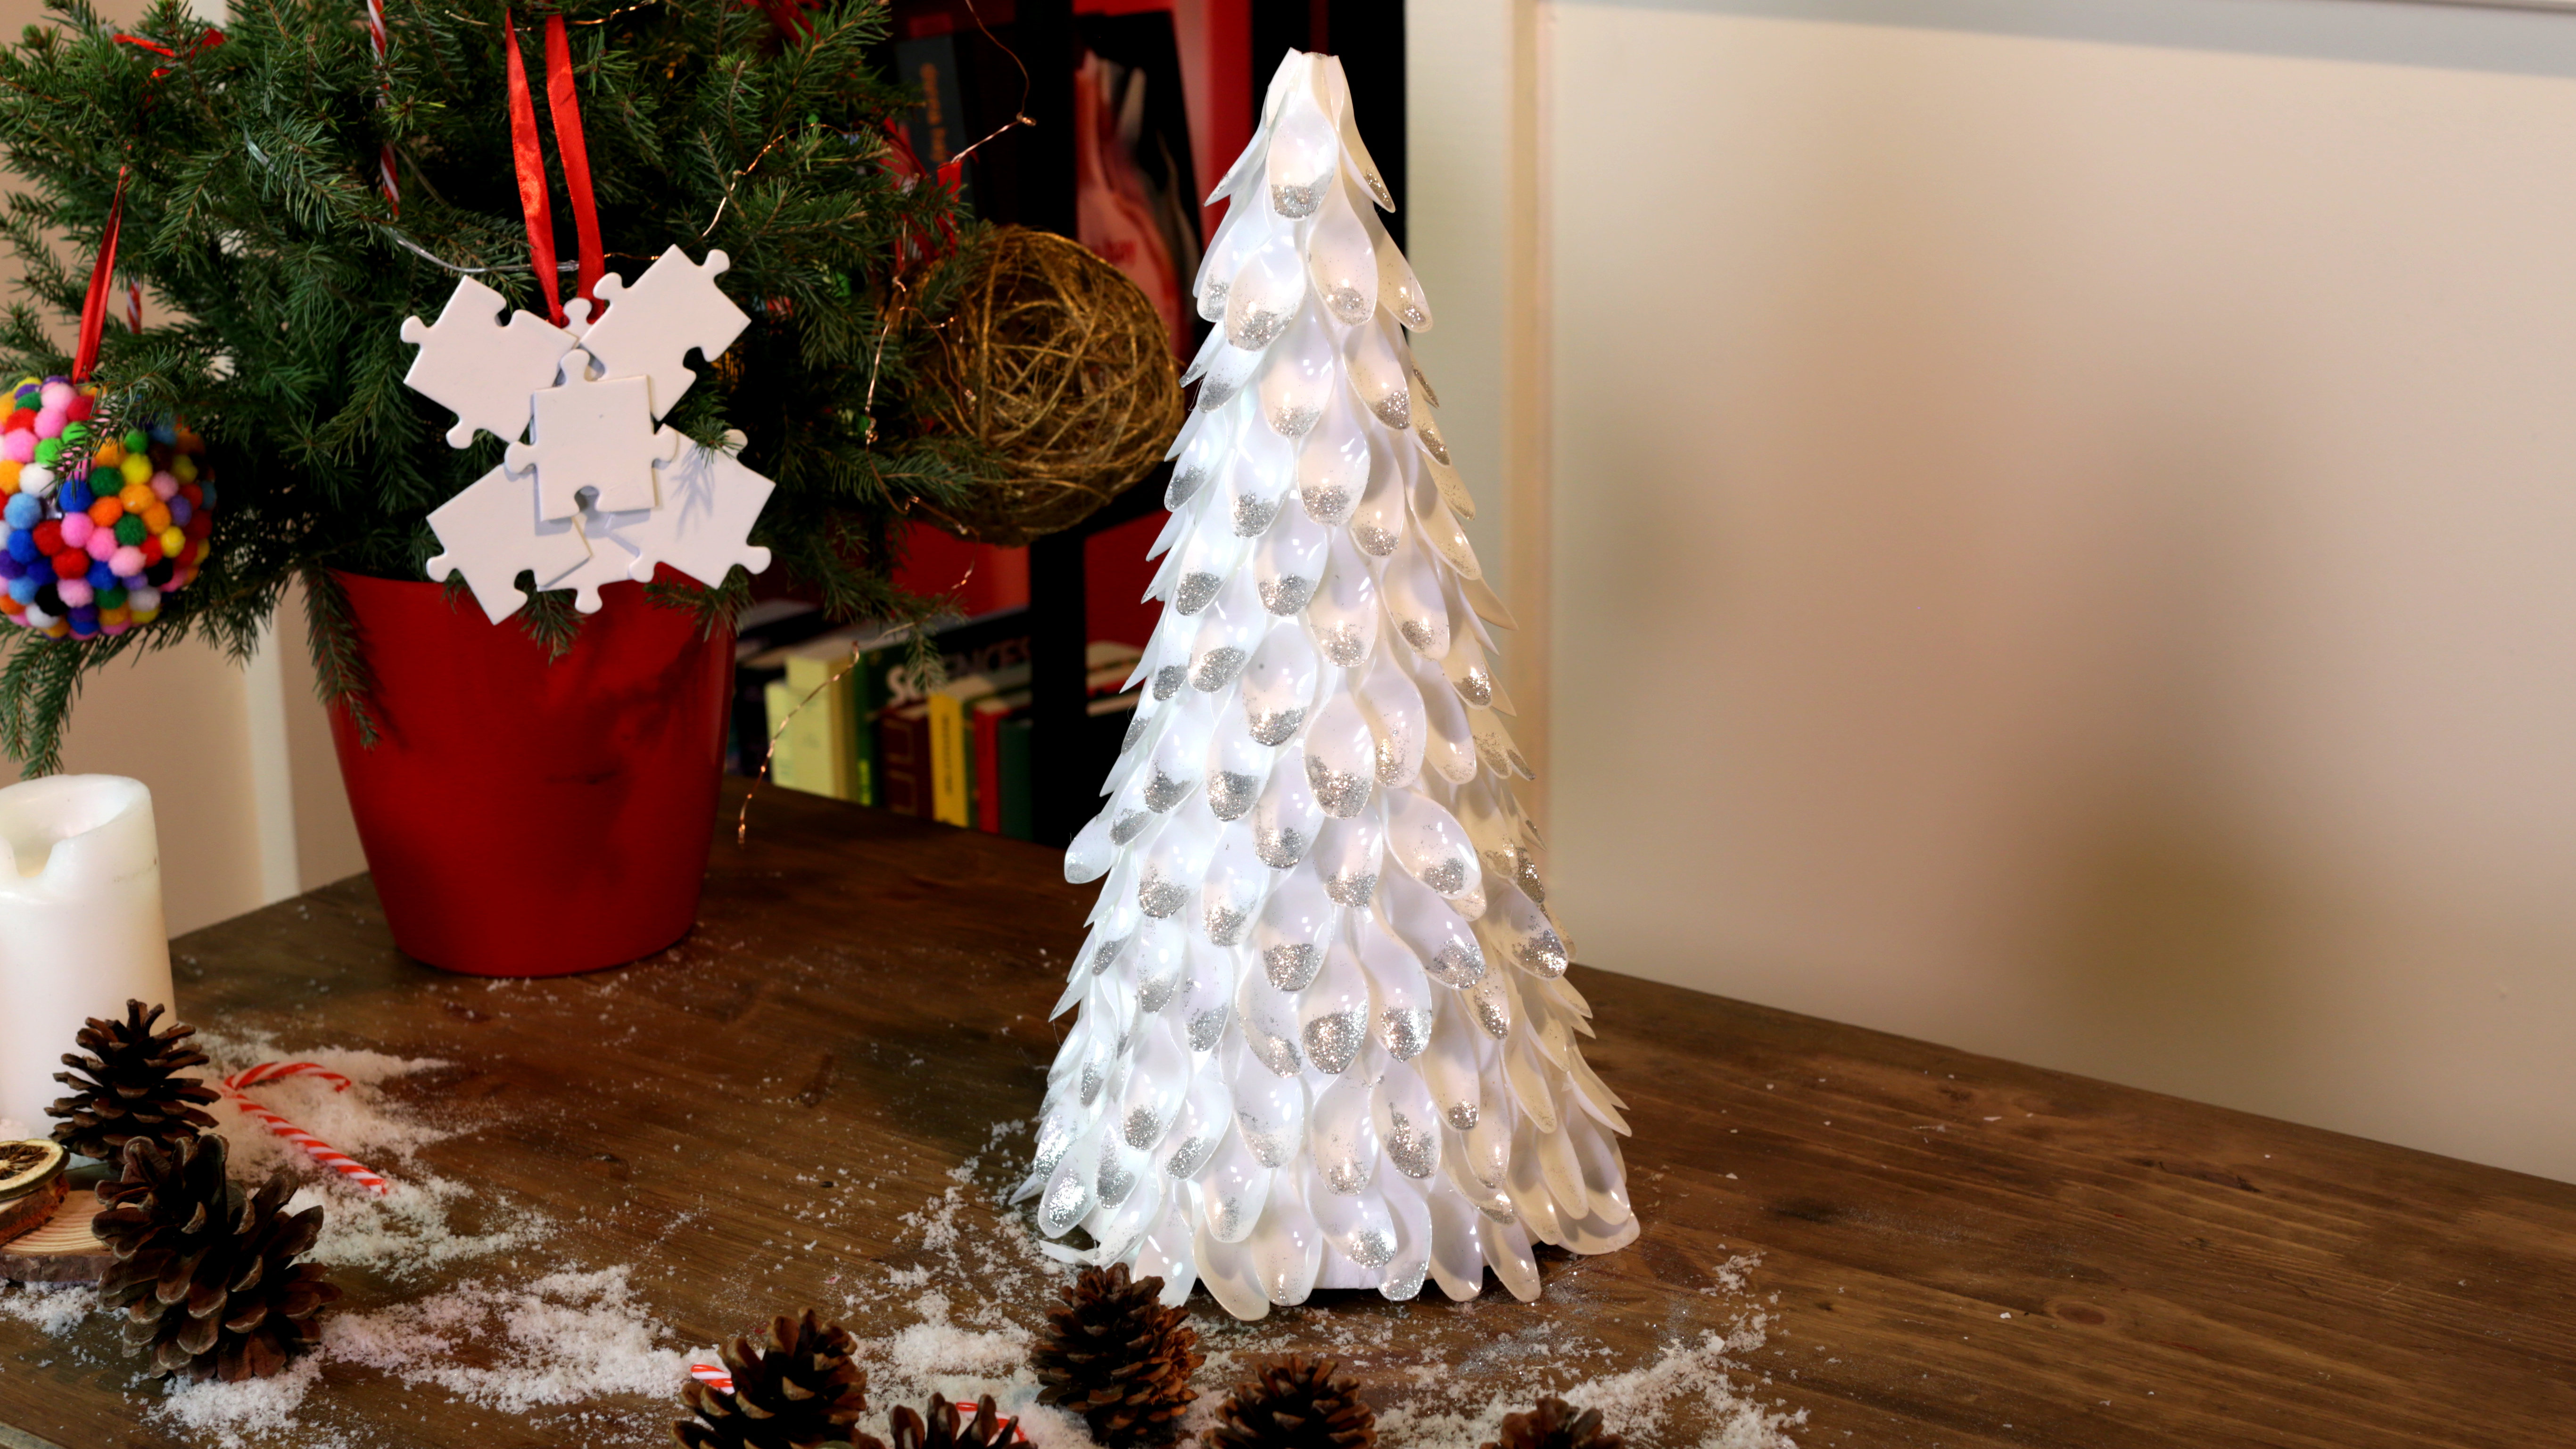 Ανακυκλώστε τα πλαστικά σας μπουκάλια για να δημιουργήσετε χριστουγεννιάτικα στολίδια.